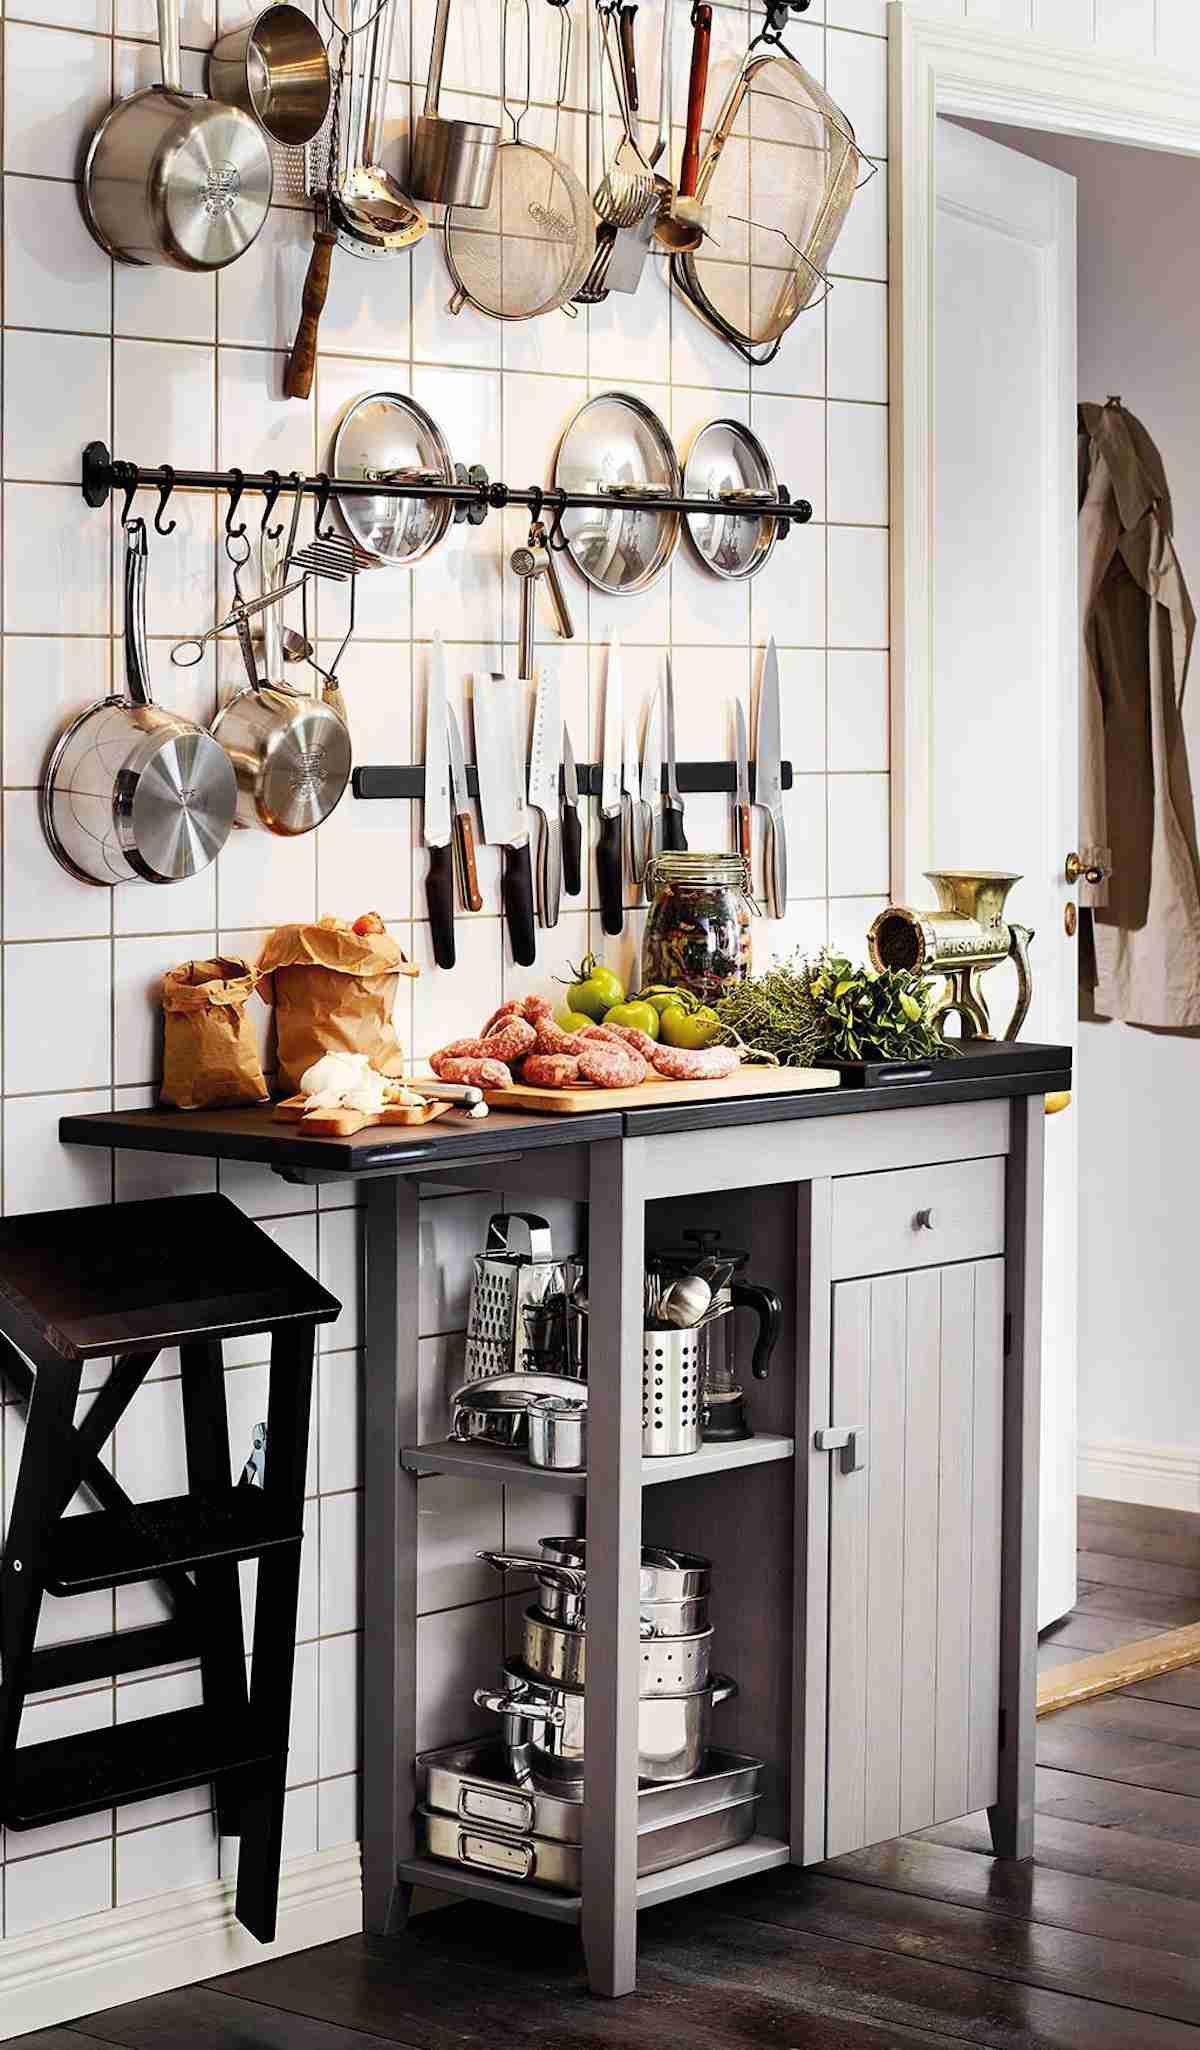 Las ideas más prácticas para montar una cocina sin muebles altos - Foto 1